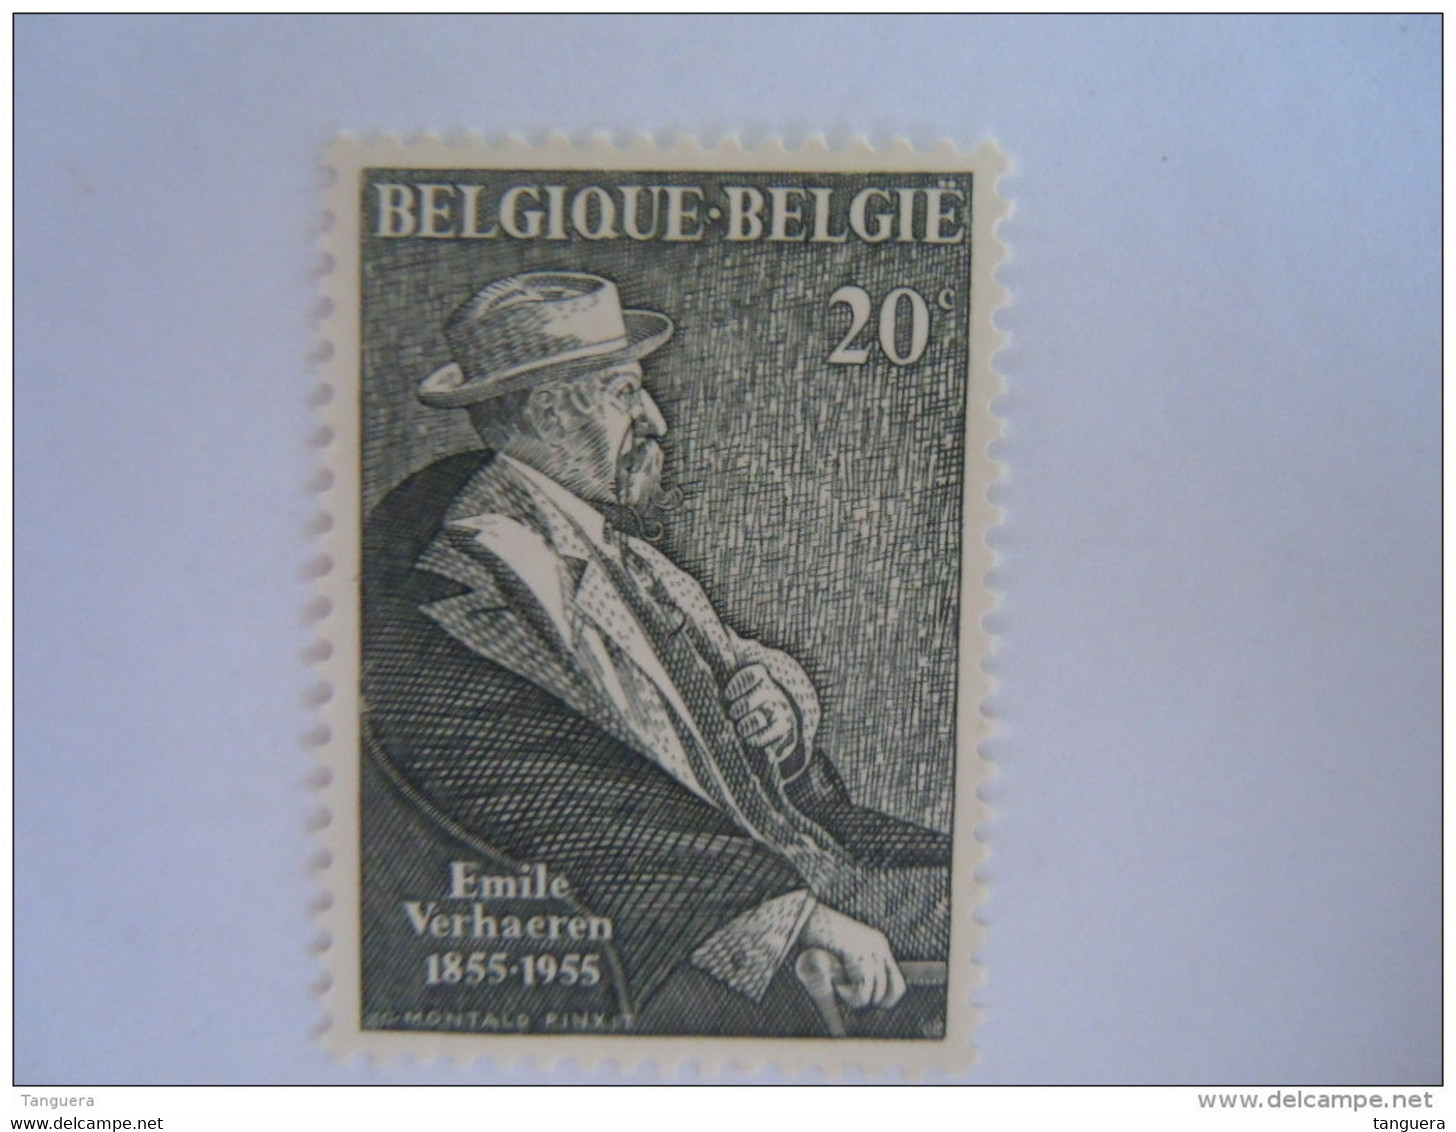 België Belgique 1955 Dichter Poète Emile Verhaeren 967 MNH ** - Nuevos